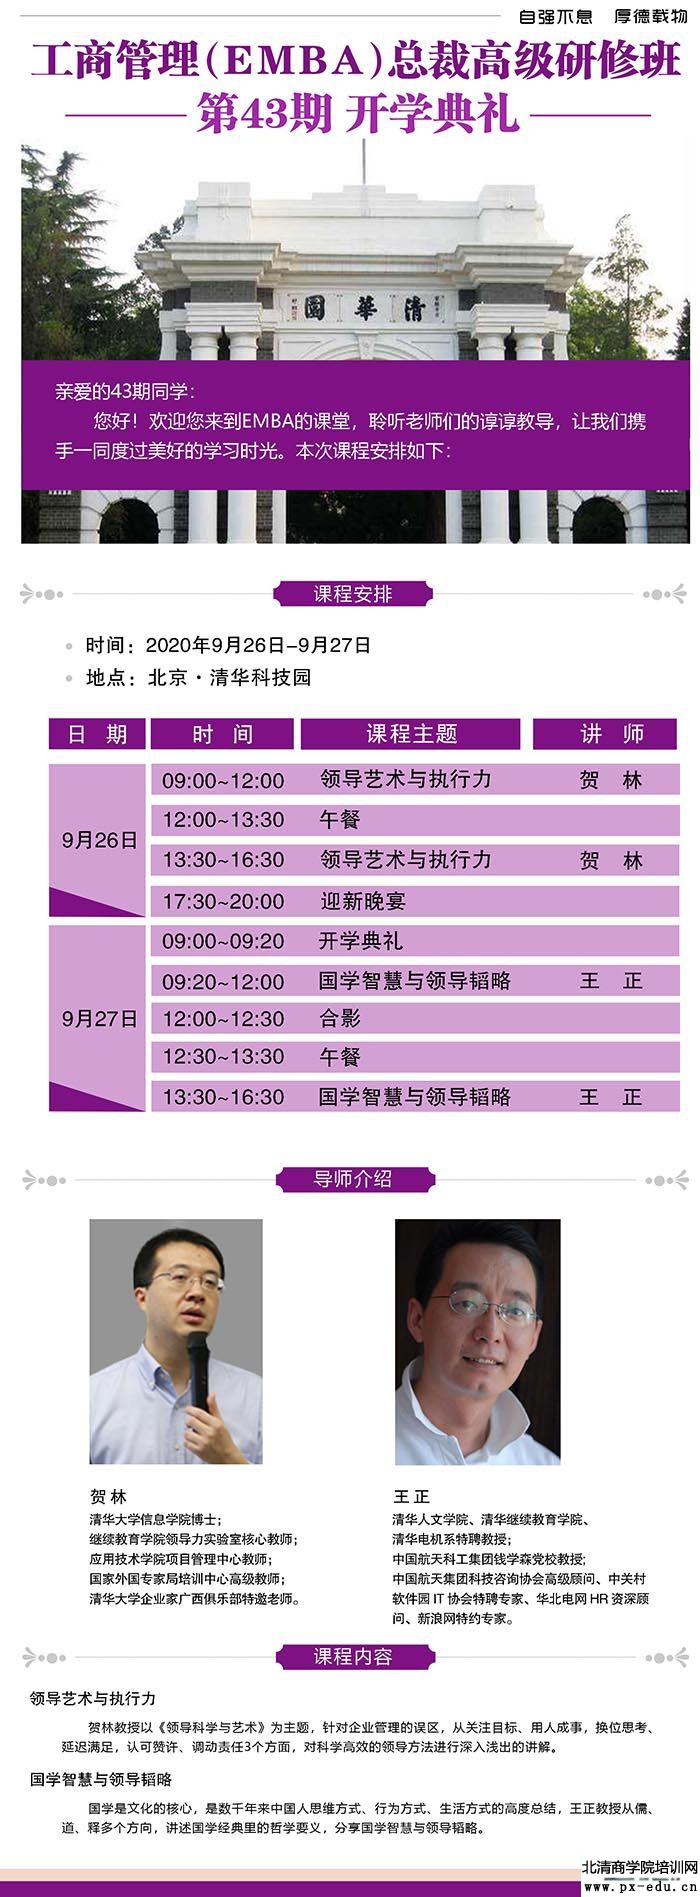 9月26-27日清大EMBA-工商管理总裁班清华科技园开课